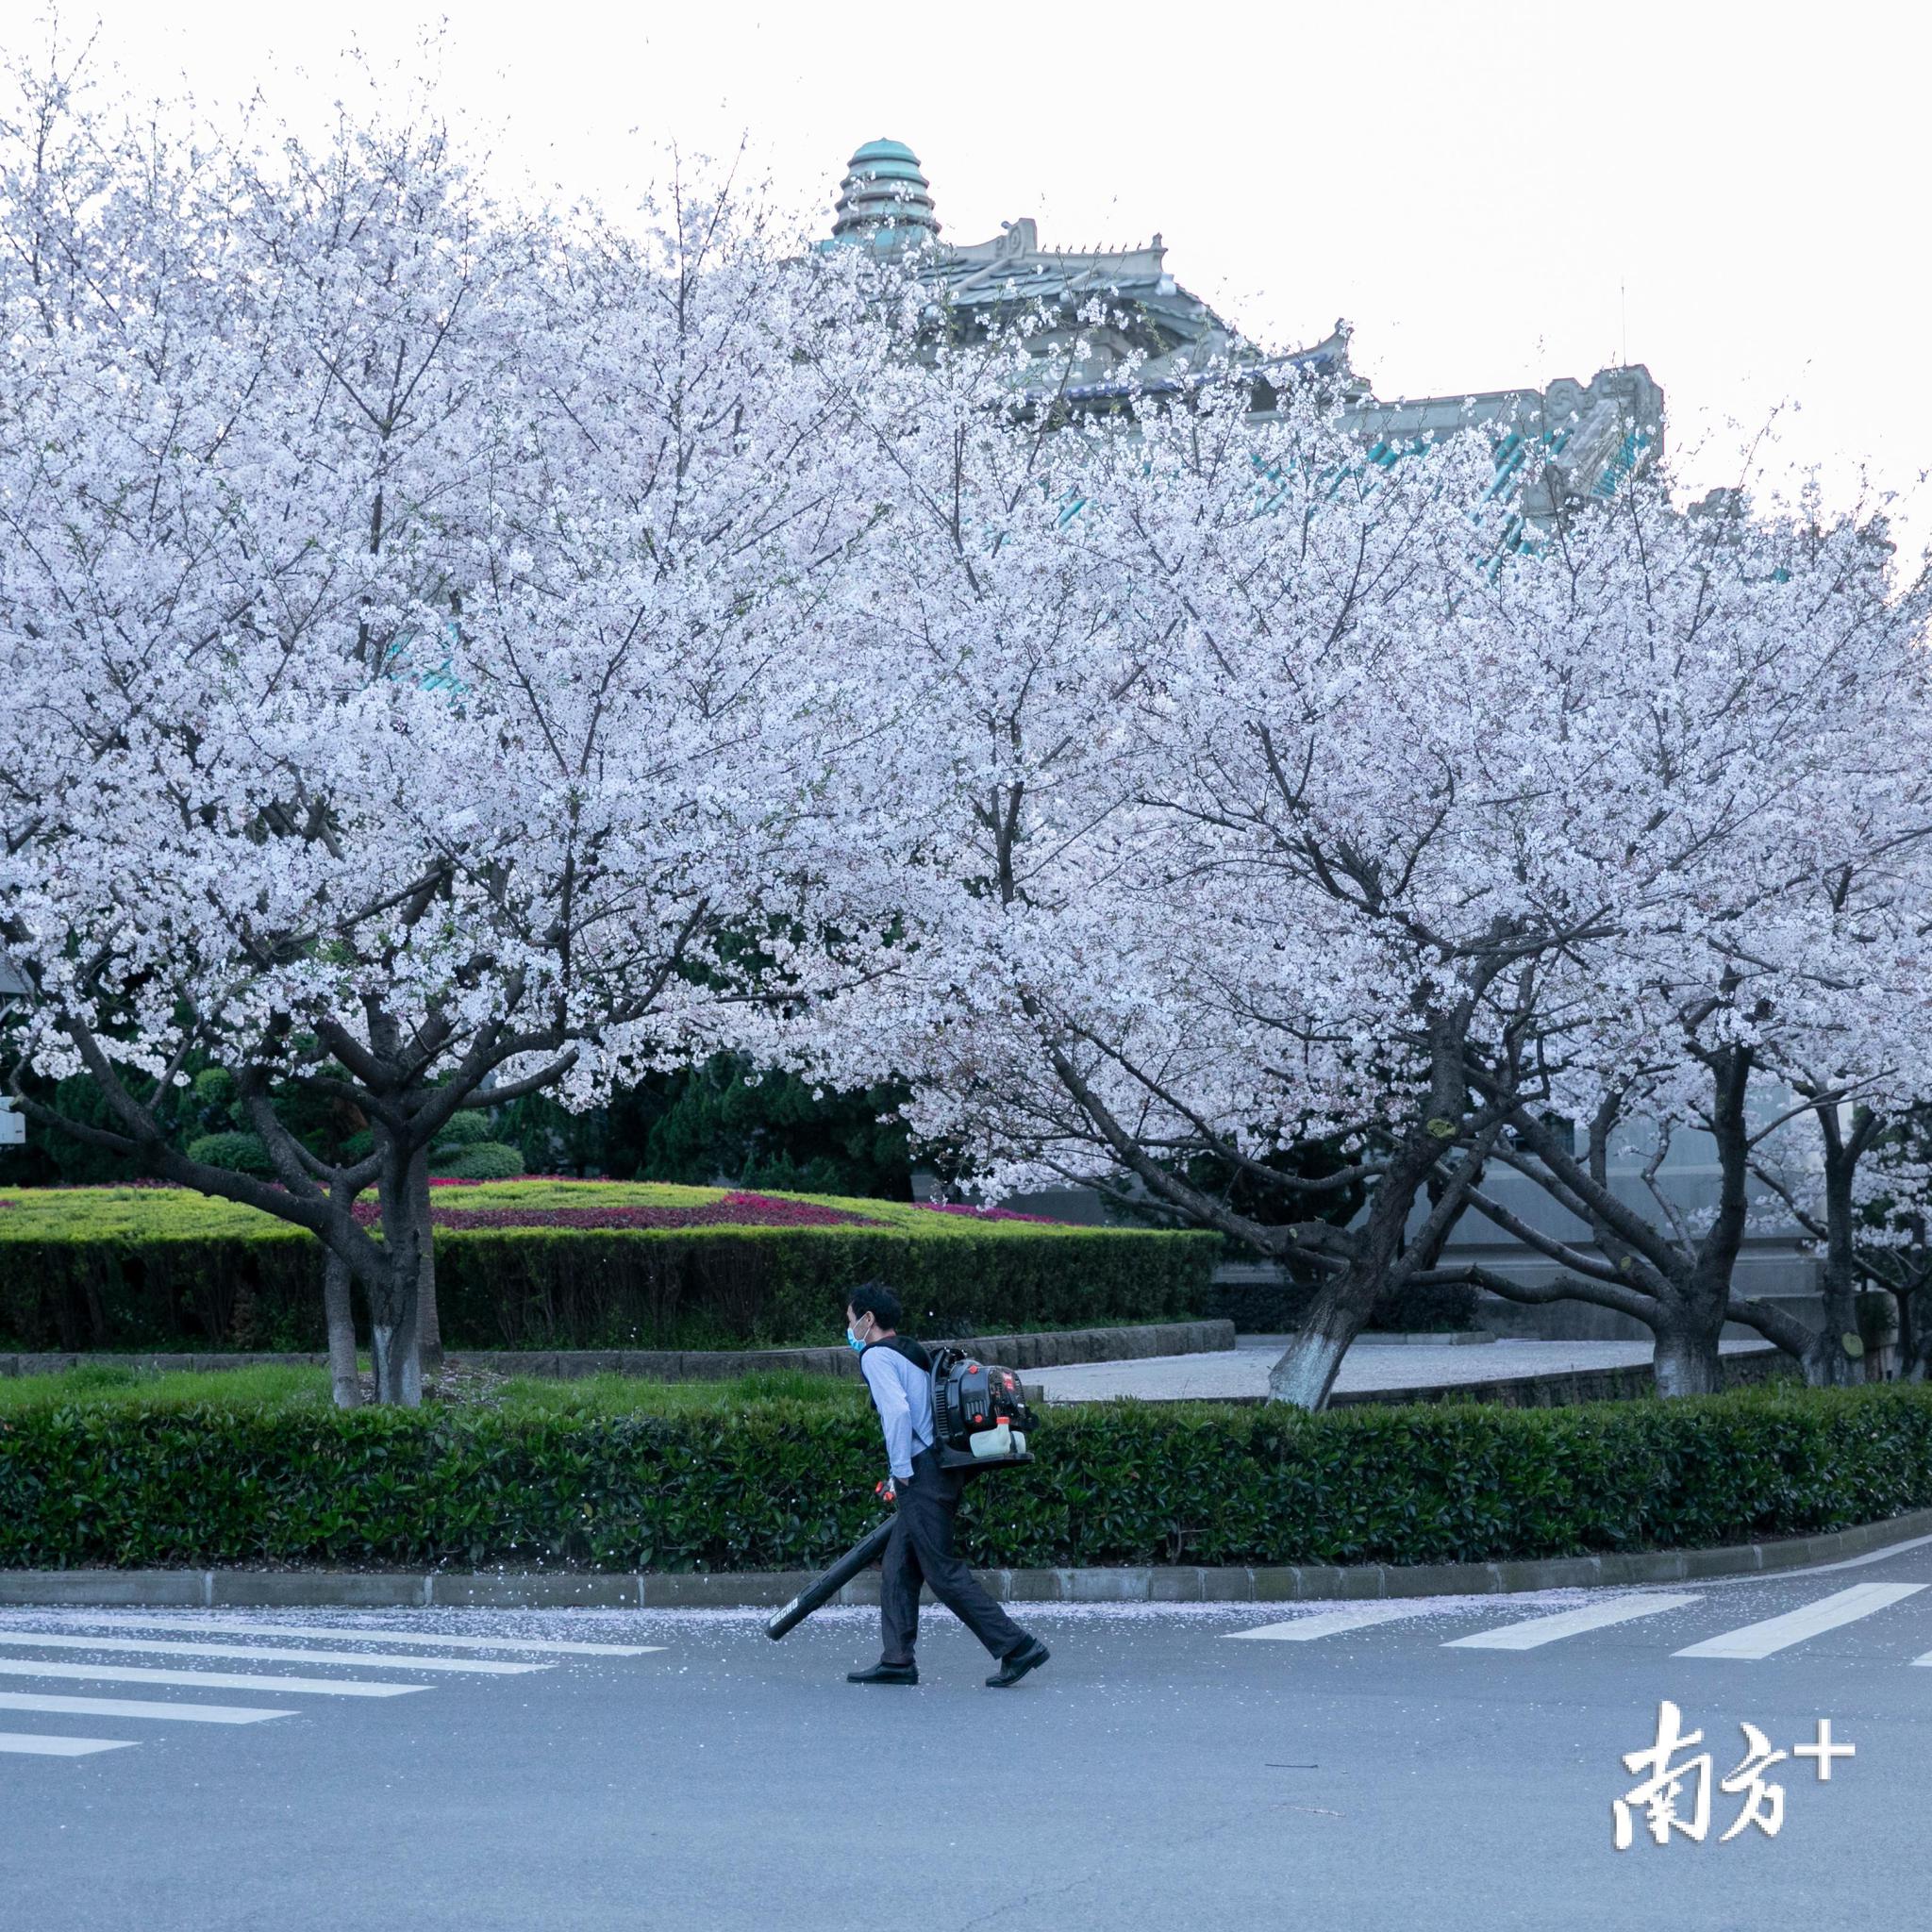 武大樱花开了！这是武汉最坚强的一个春天|武大樱花|新冠肺炎_新浪新闻